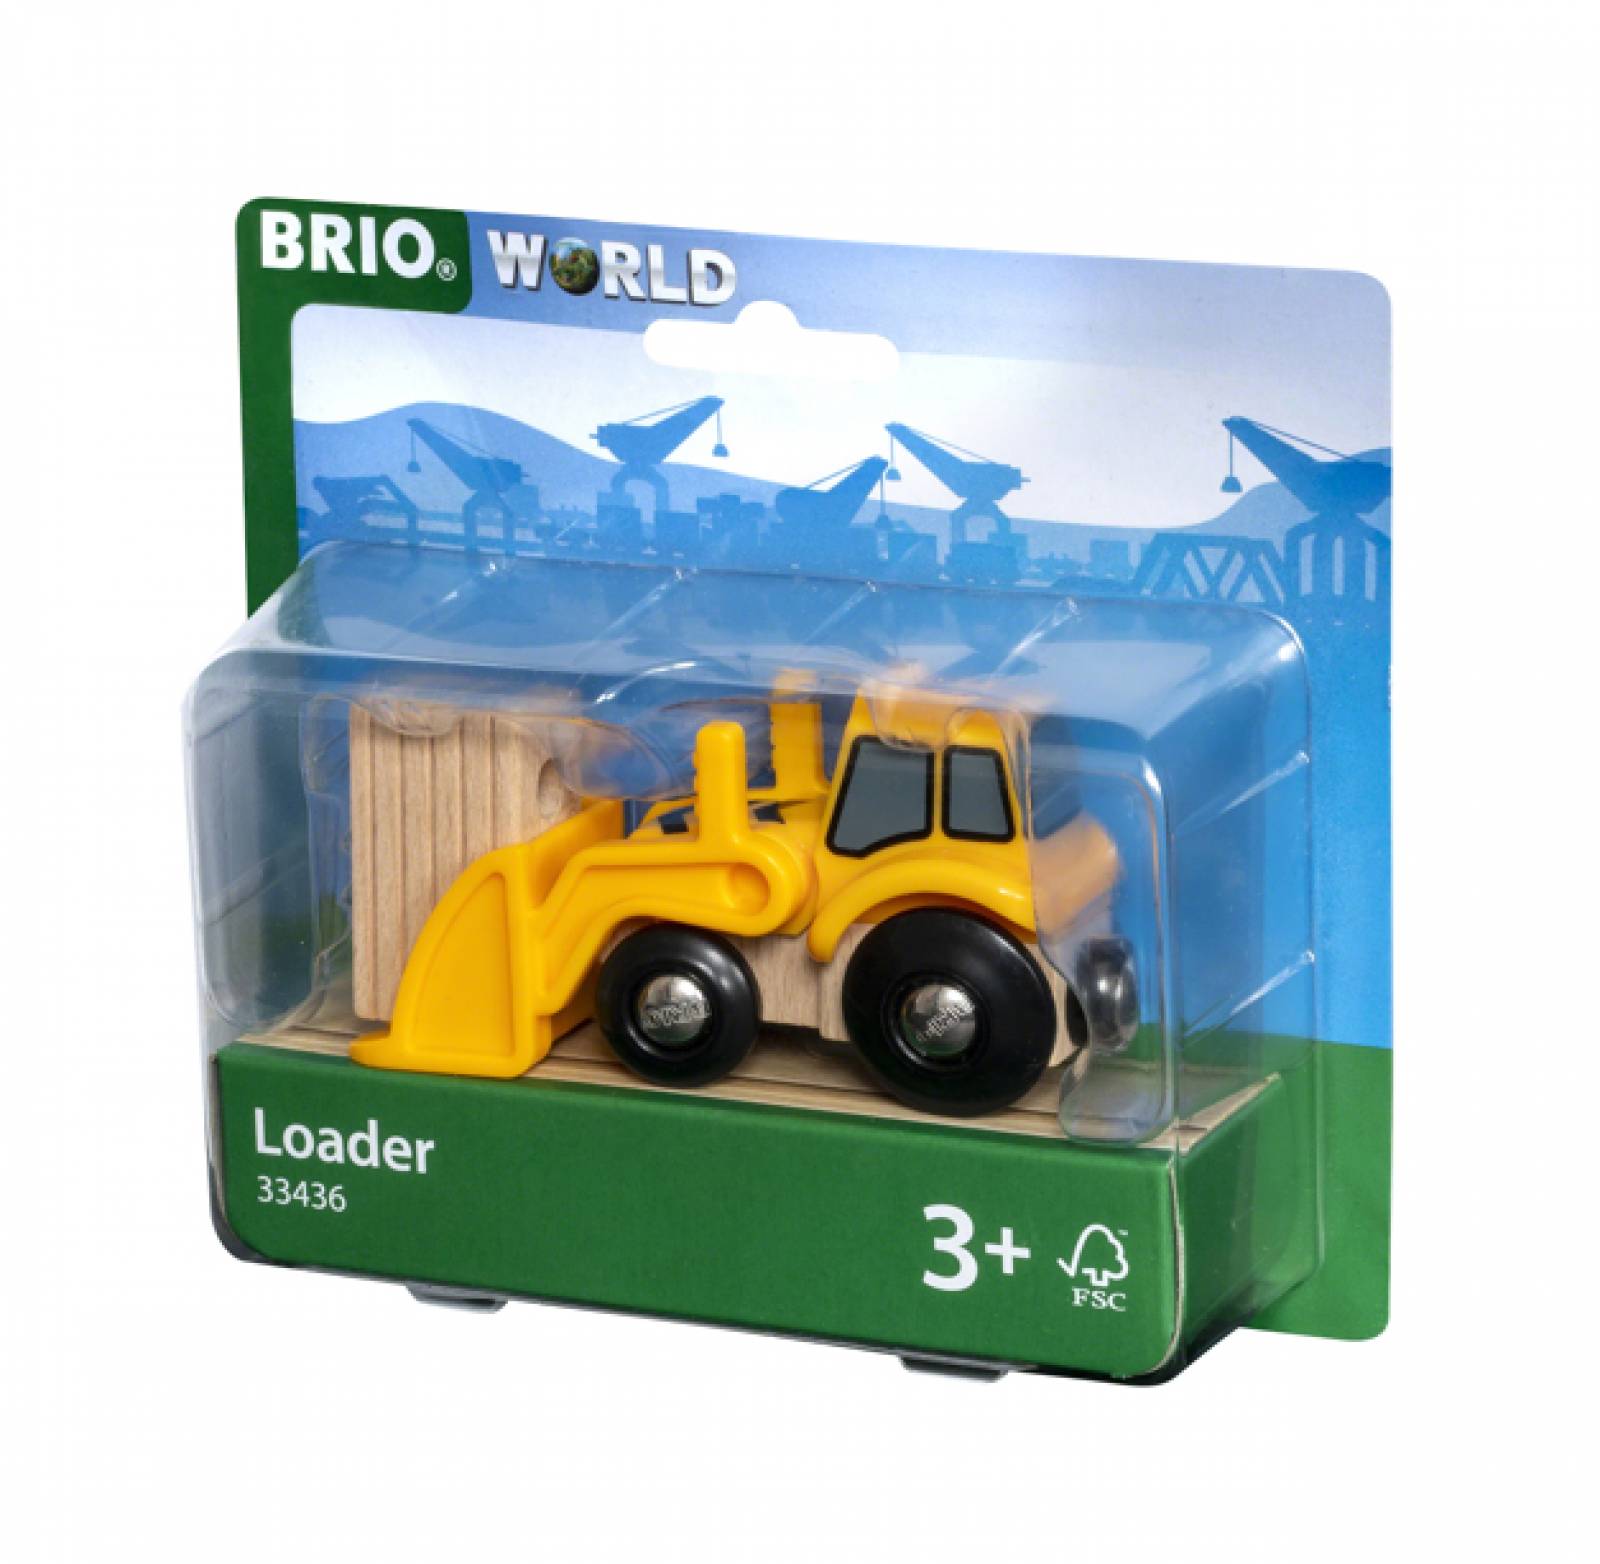 Loader Digger BRIO Wooden Railway Age 3+